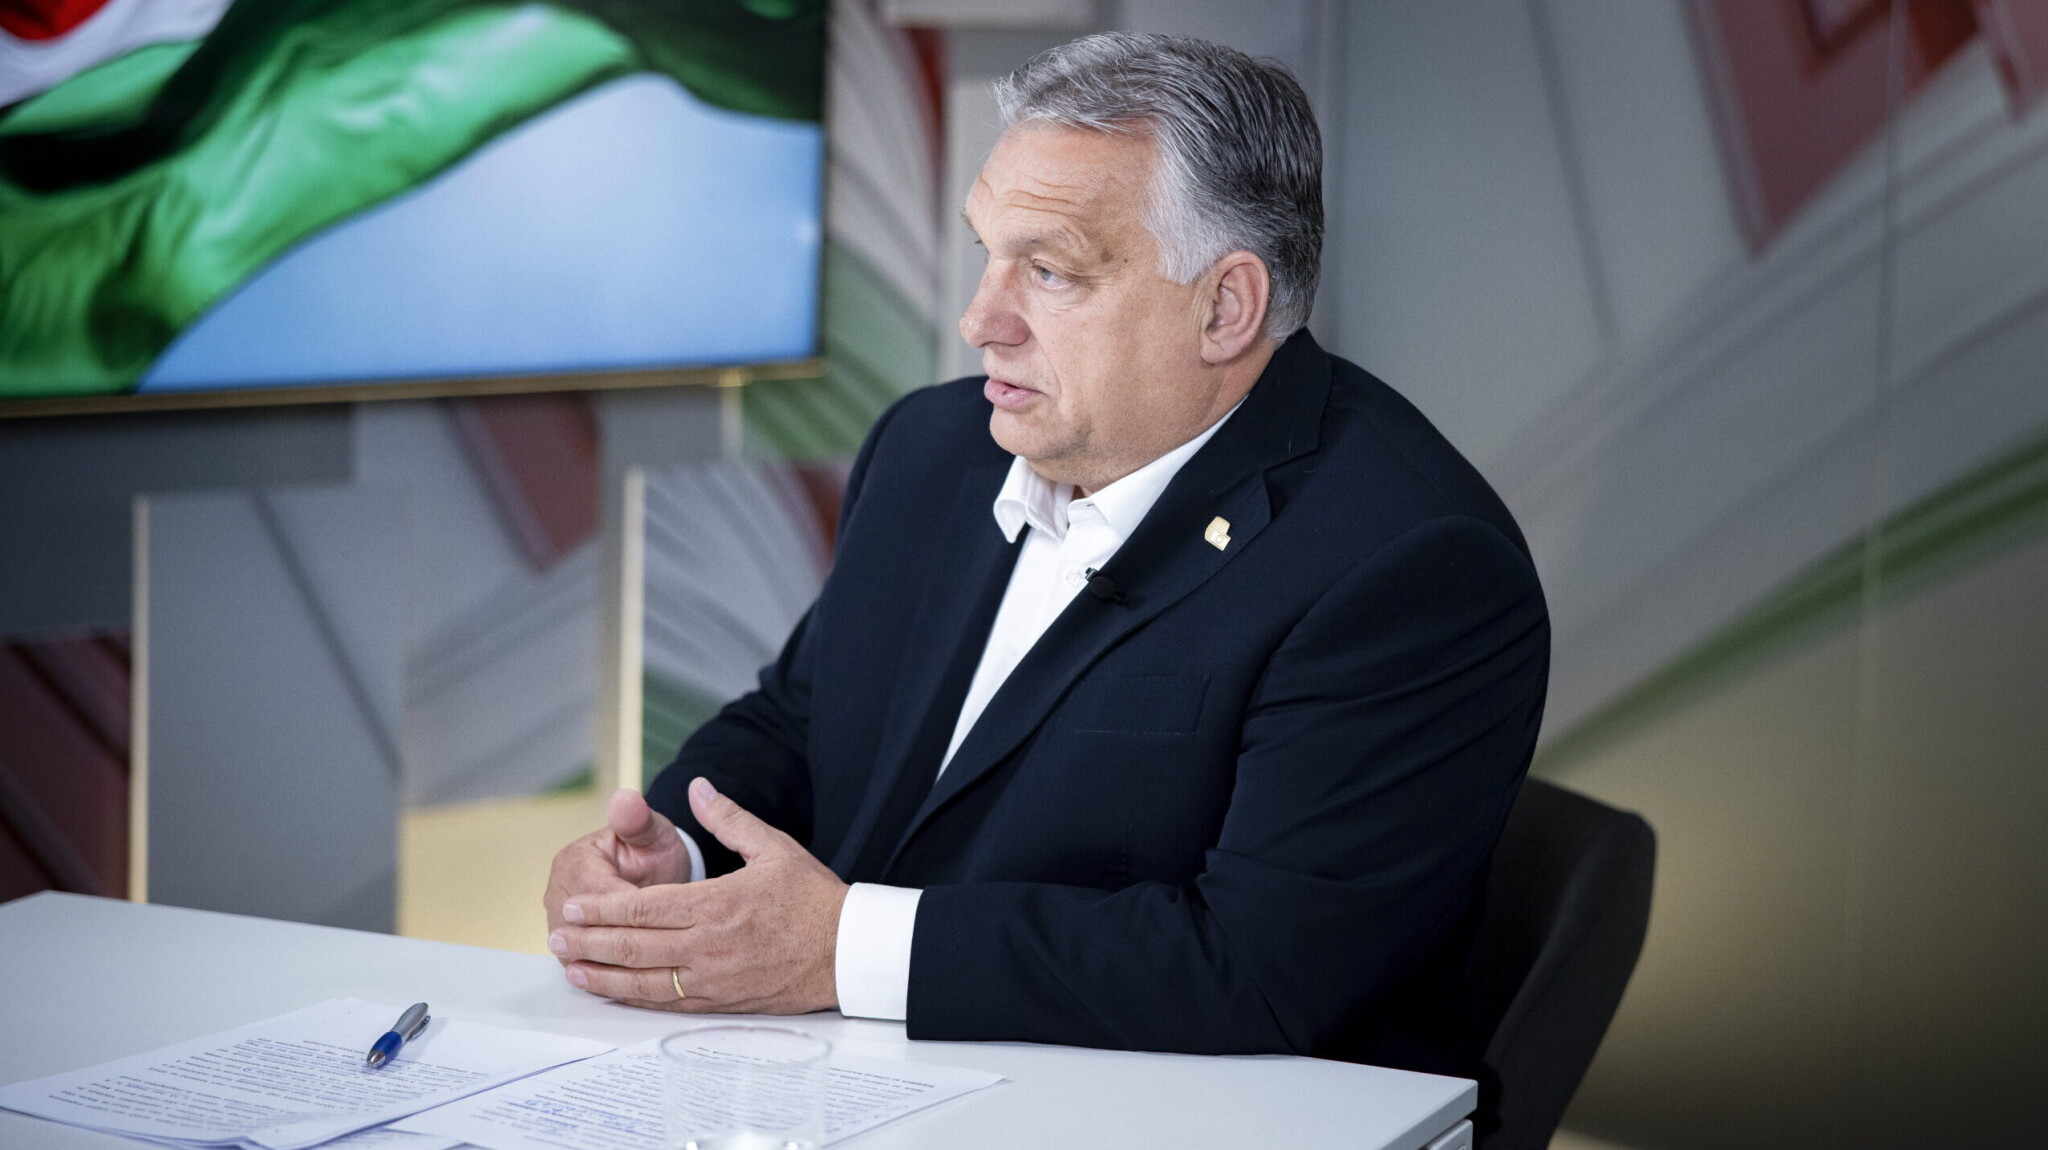 Ez legalább egyértelmű: Orbán két embert is hazaküldött